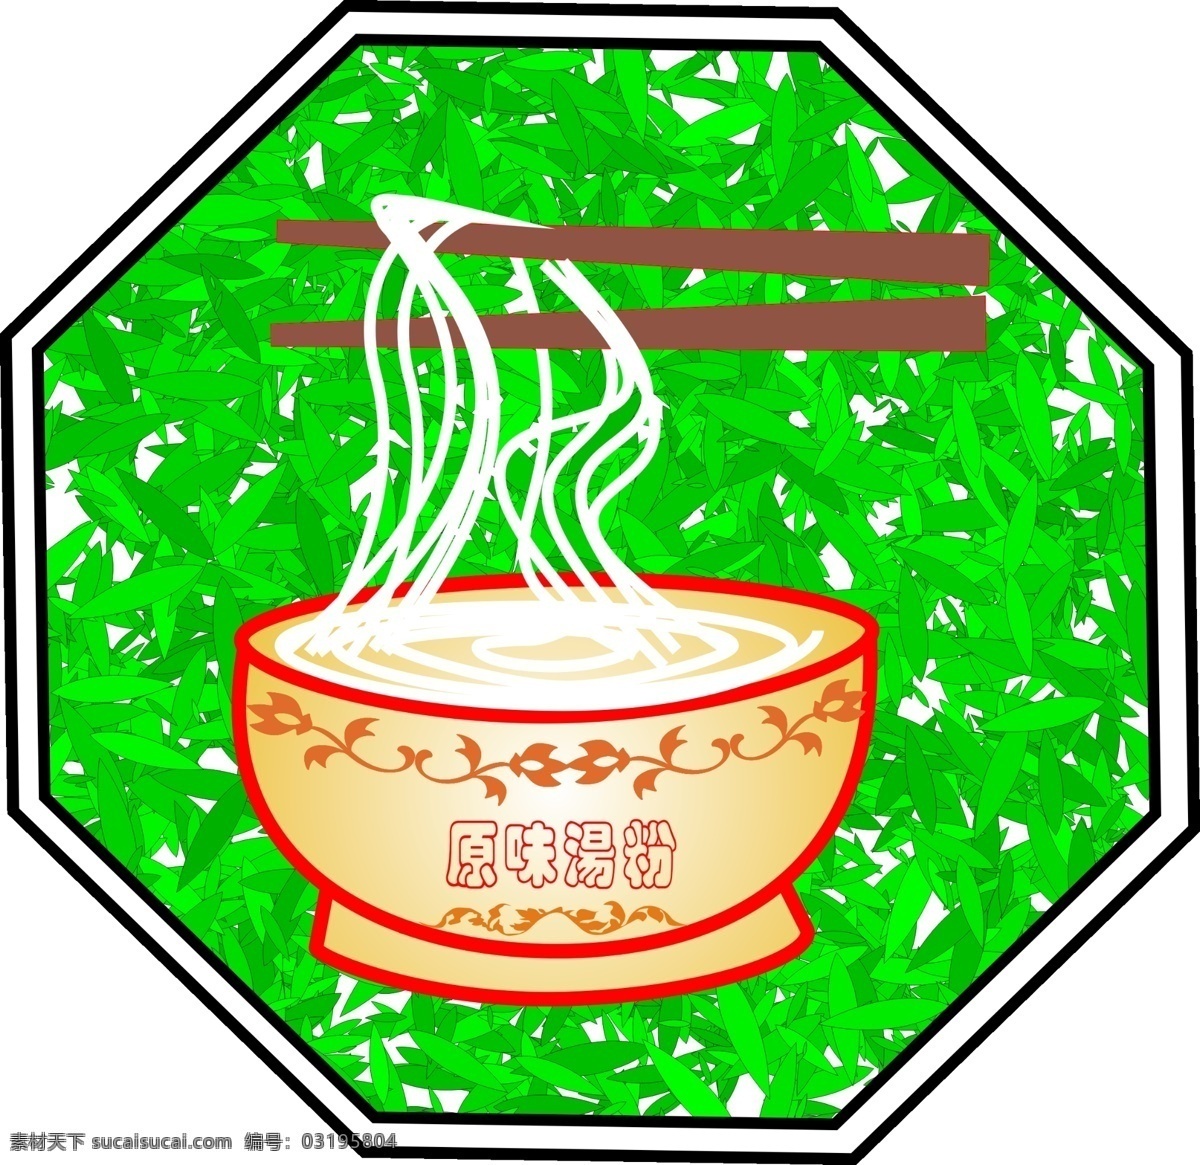 一碗面条 原味汤粉 筷子 碗 面条 绿叶 菜谱图标 其他模版 广告设计模板 源文件